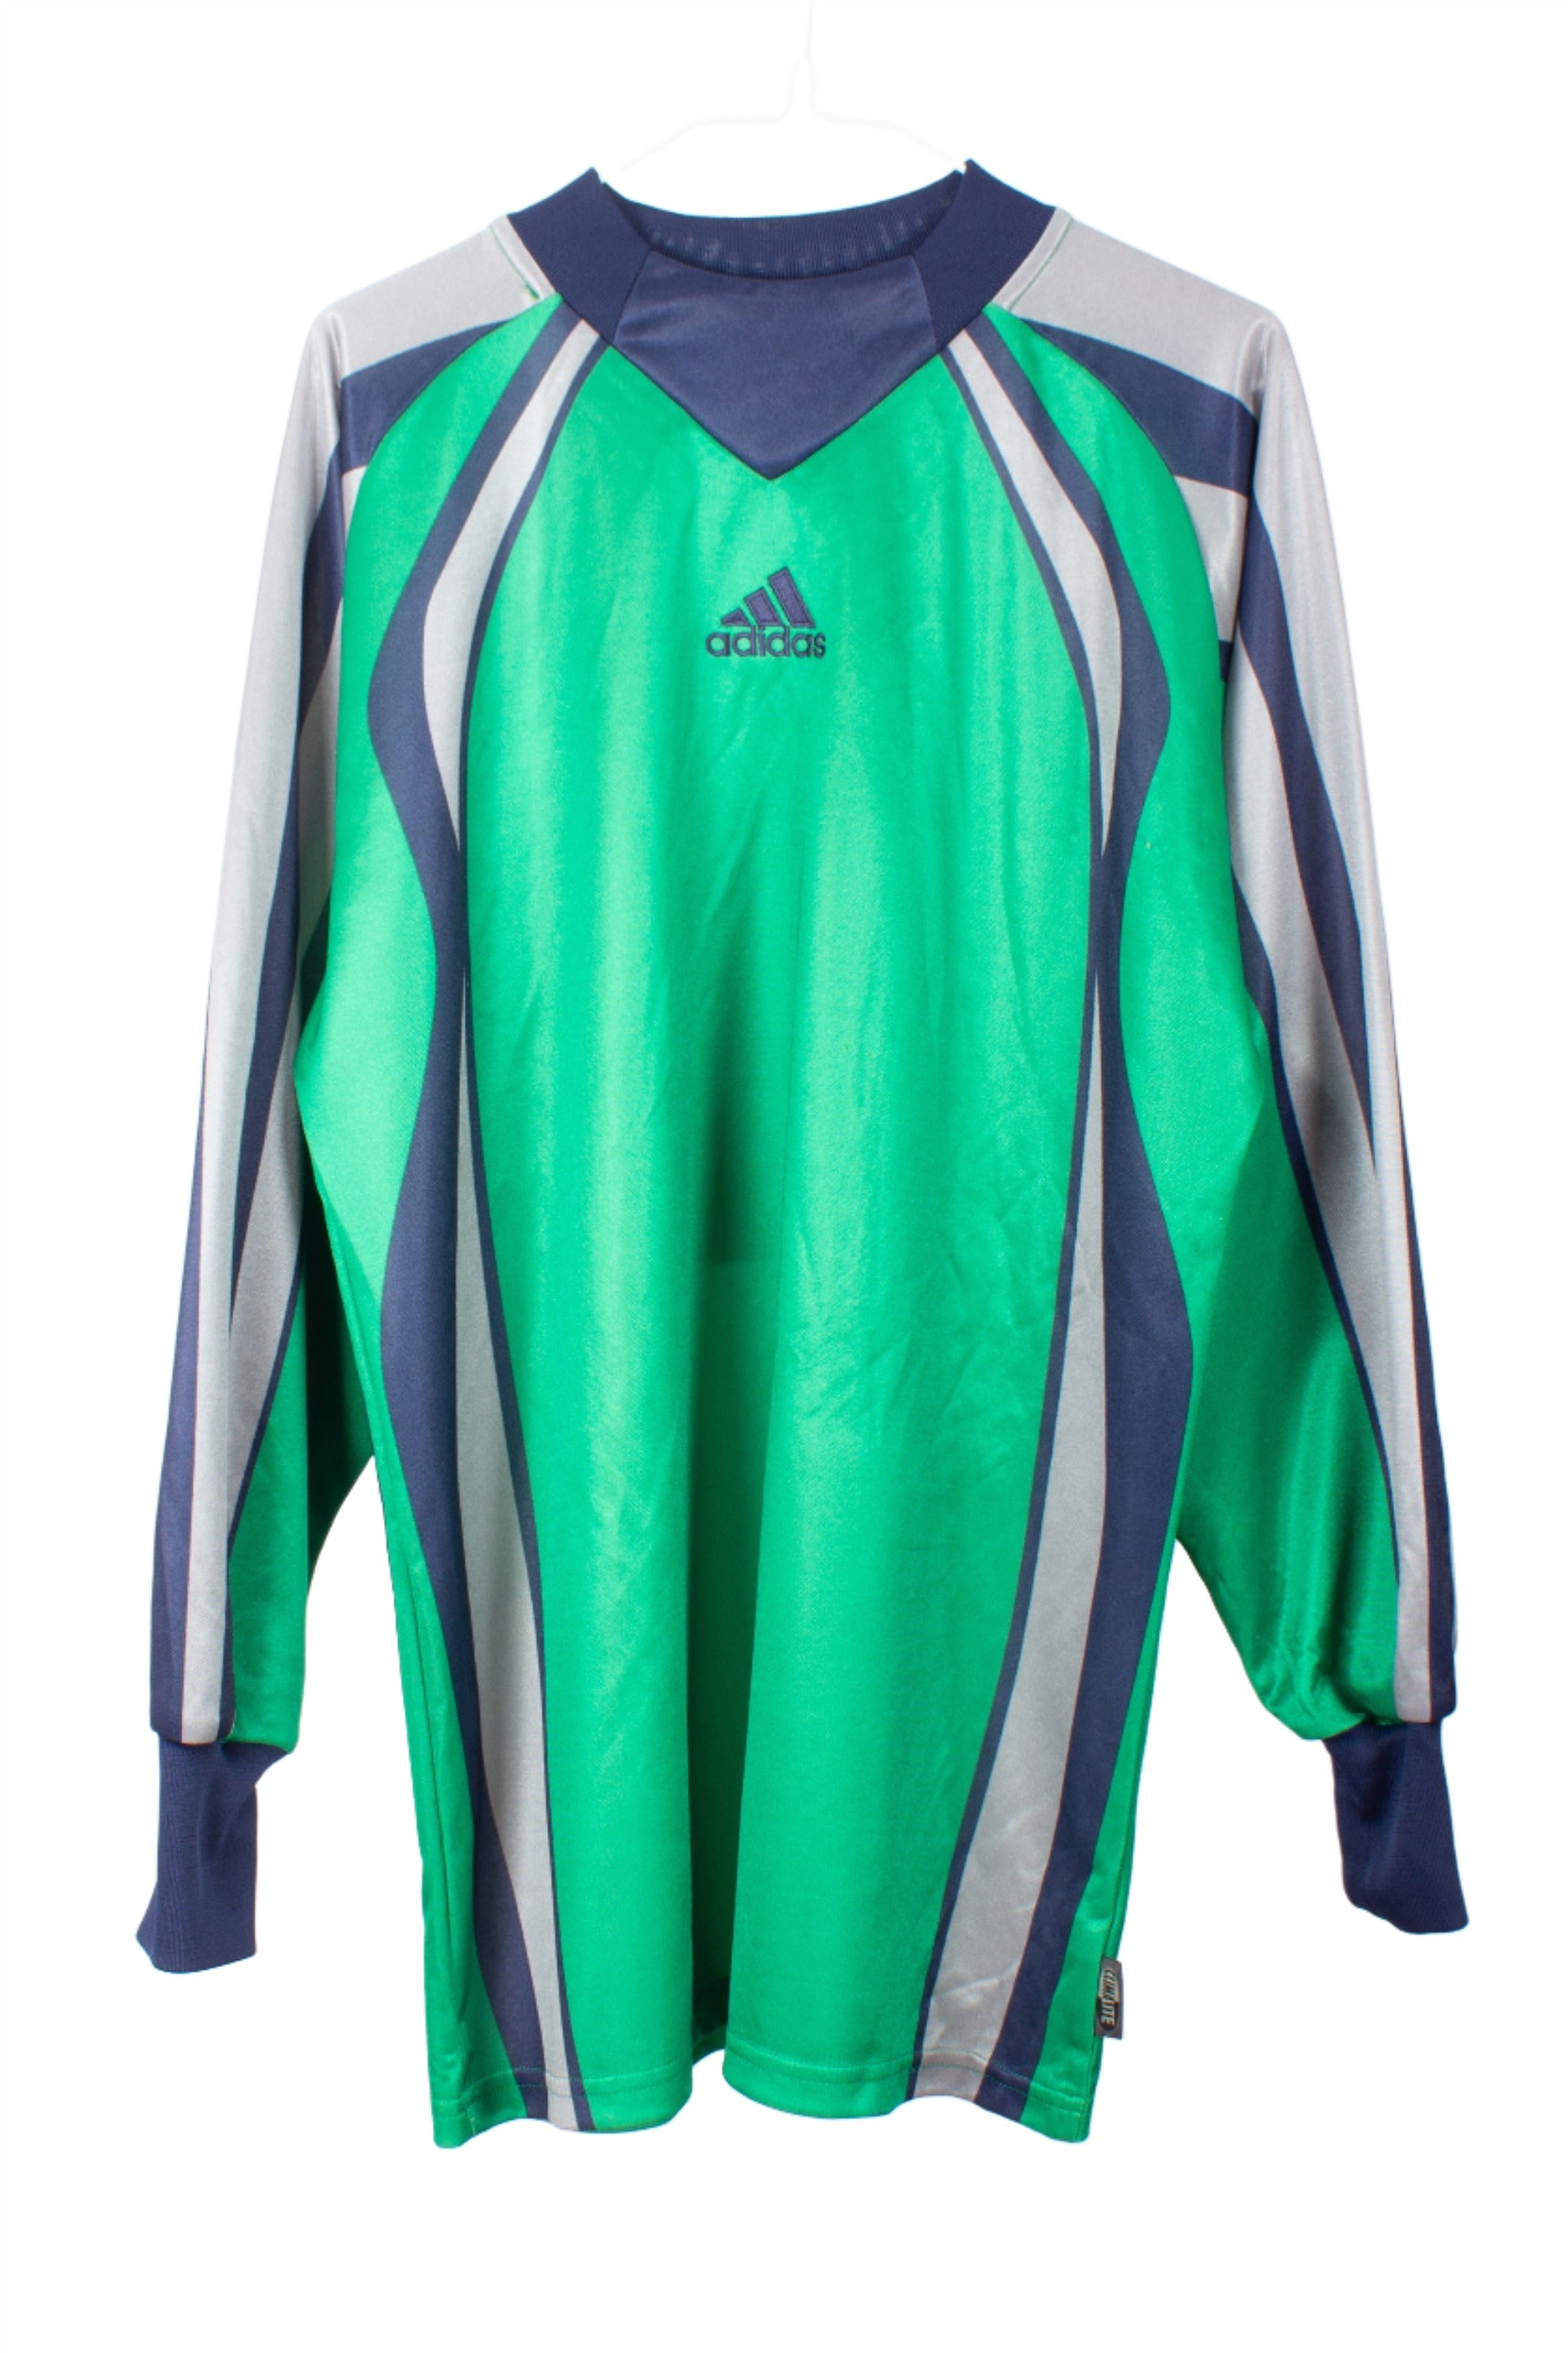 Adidas 2000s Goalkeeper Template Shirt (#1) (M)